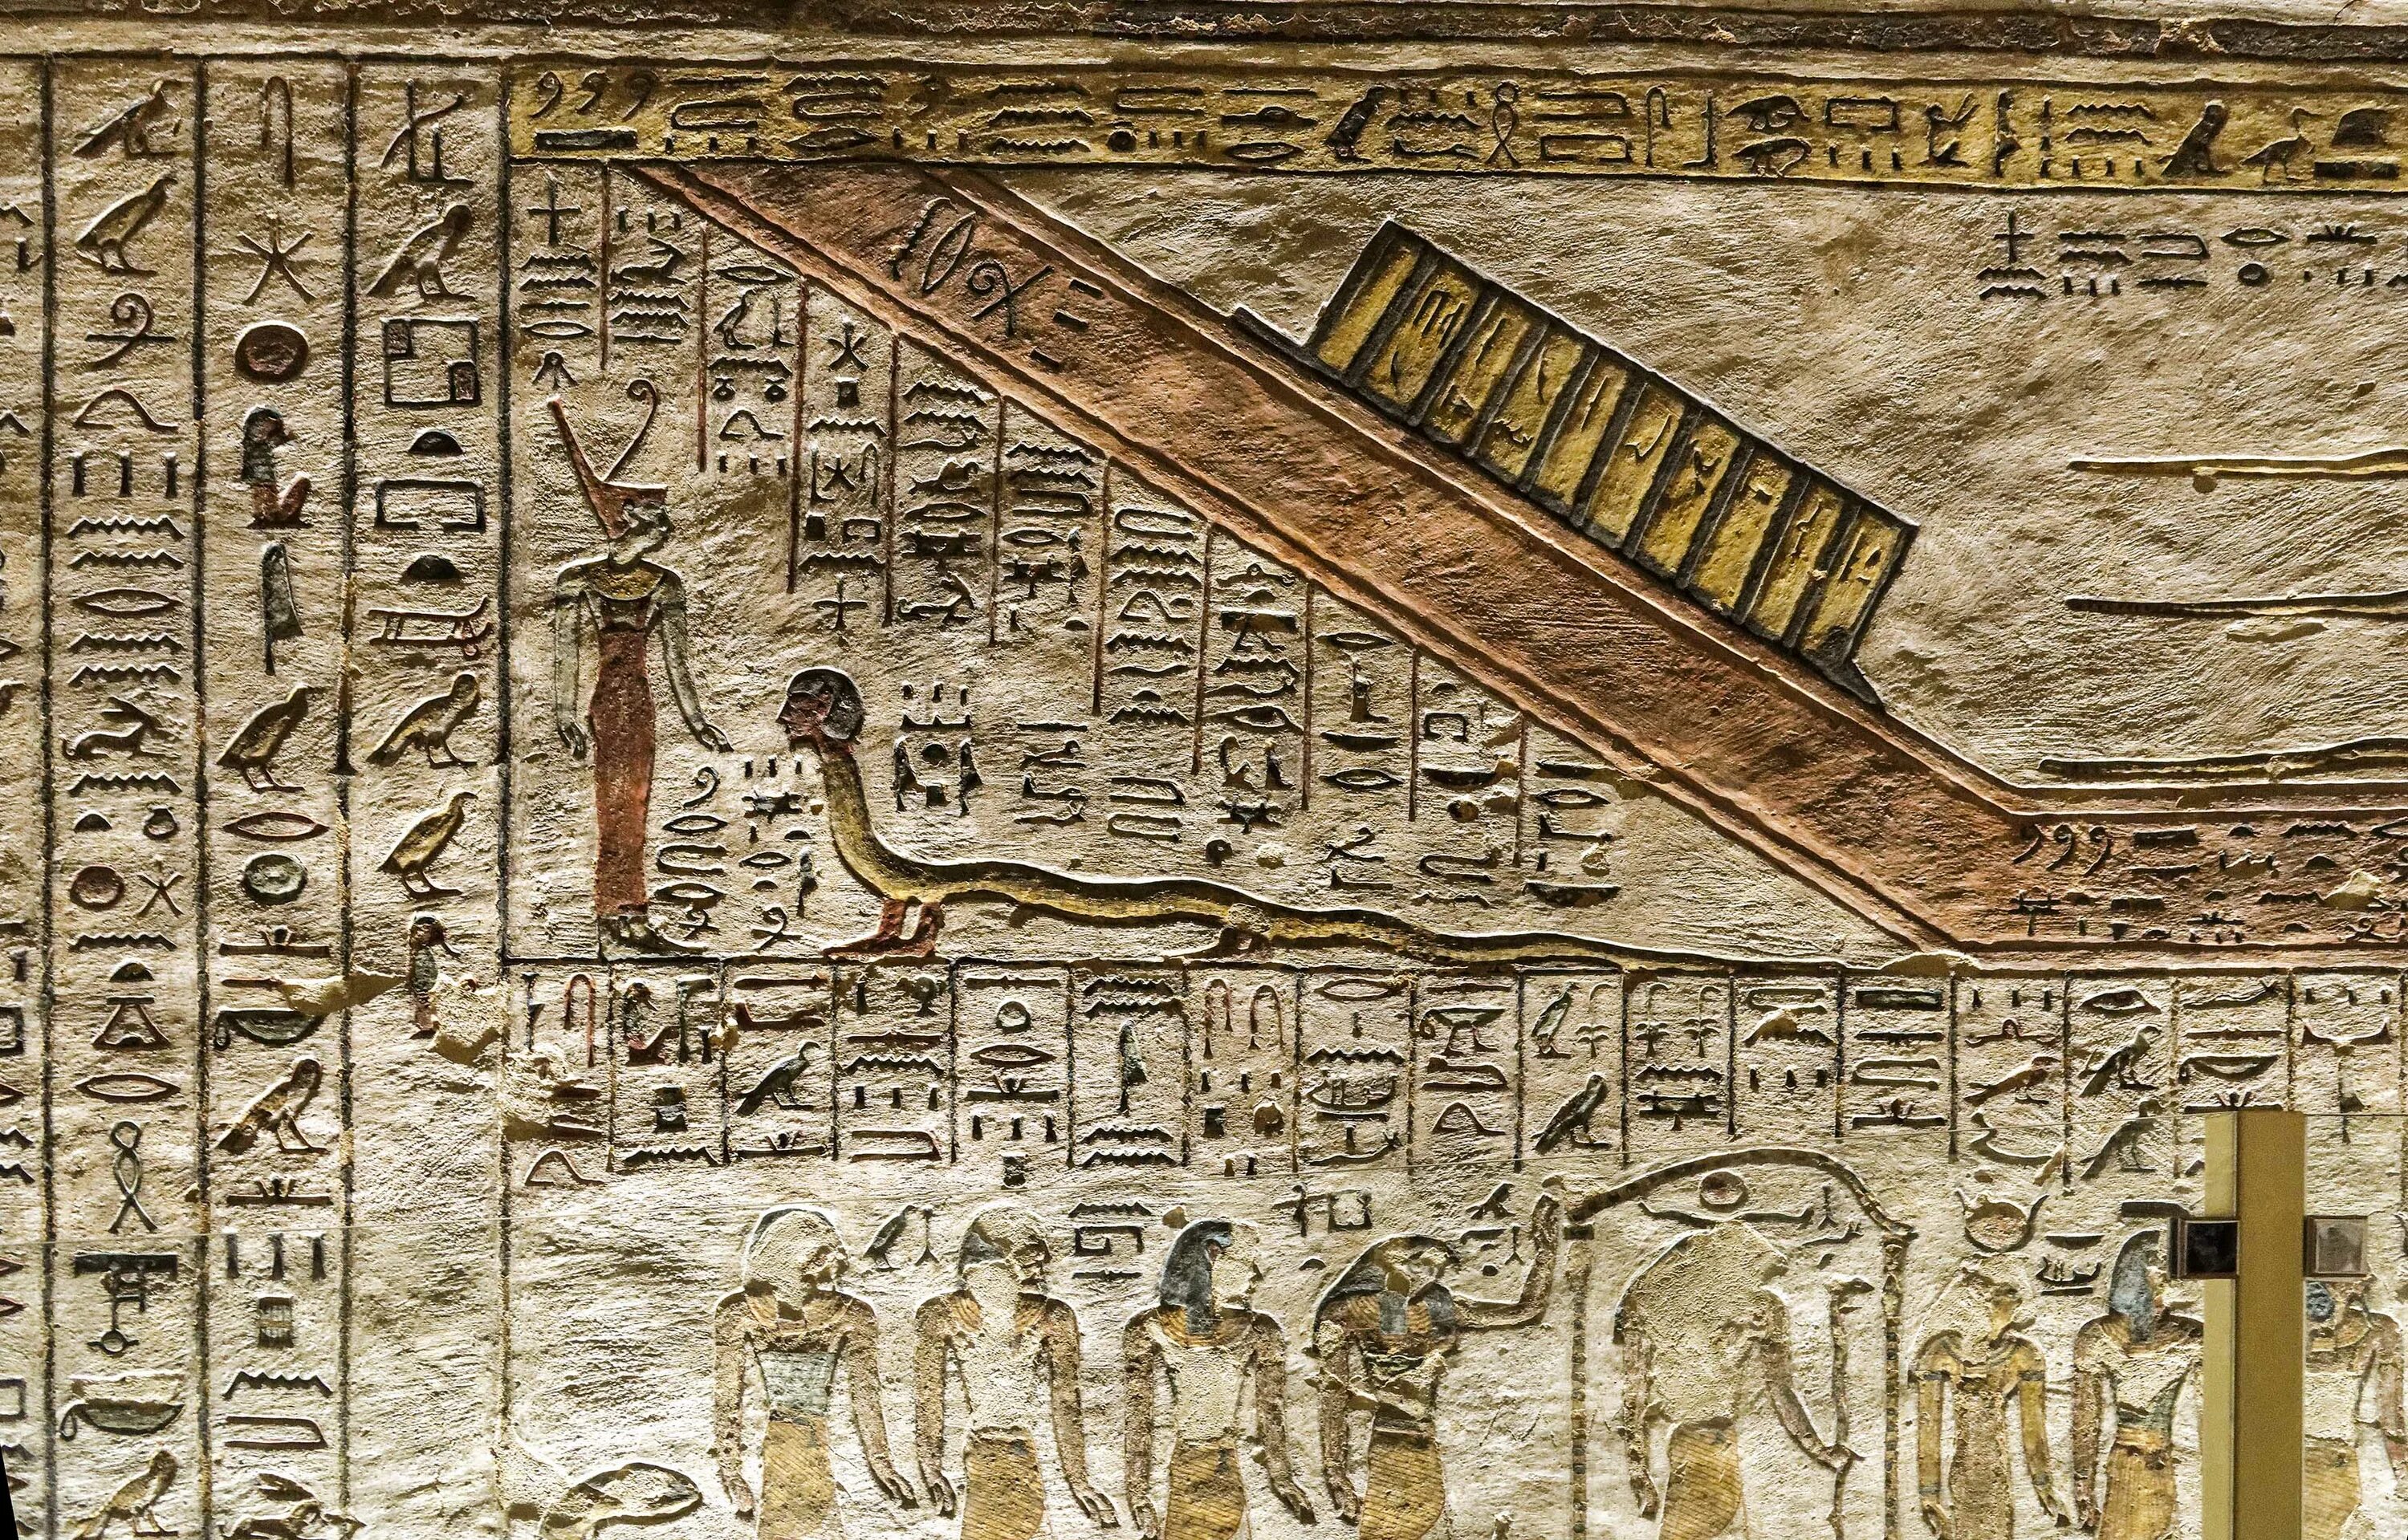 Гробница KV 11. Музей папируса Луксор, Египет. Рамсес II на папирусе. Книга мертвых.